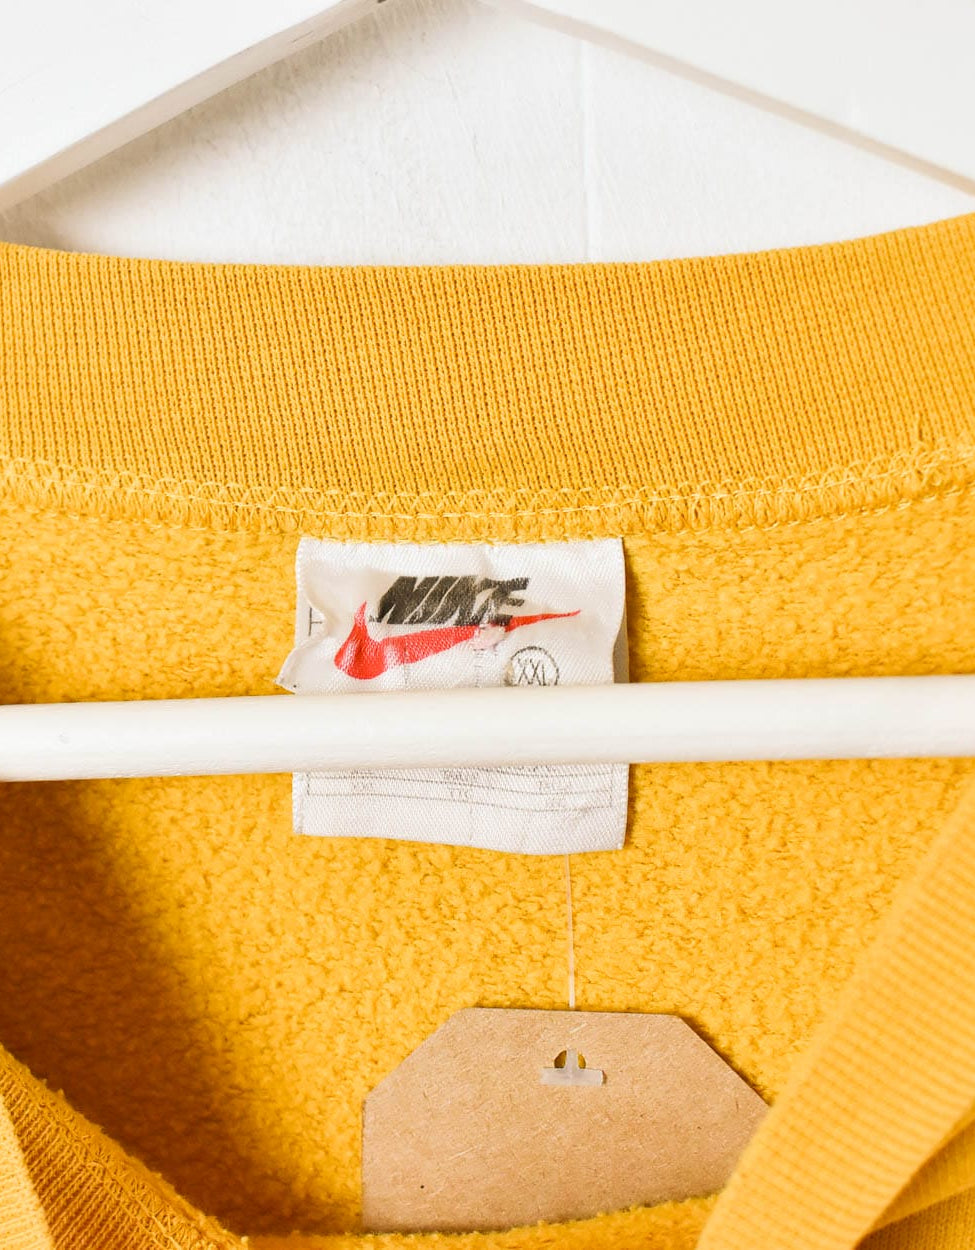 Yellow Nike Sweatshirt - XX-Large